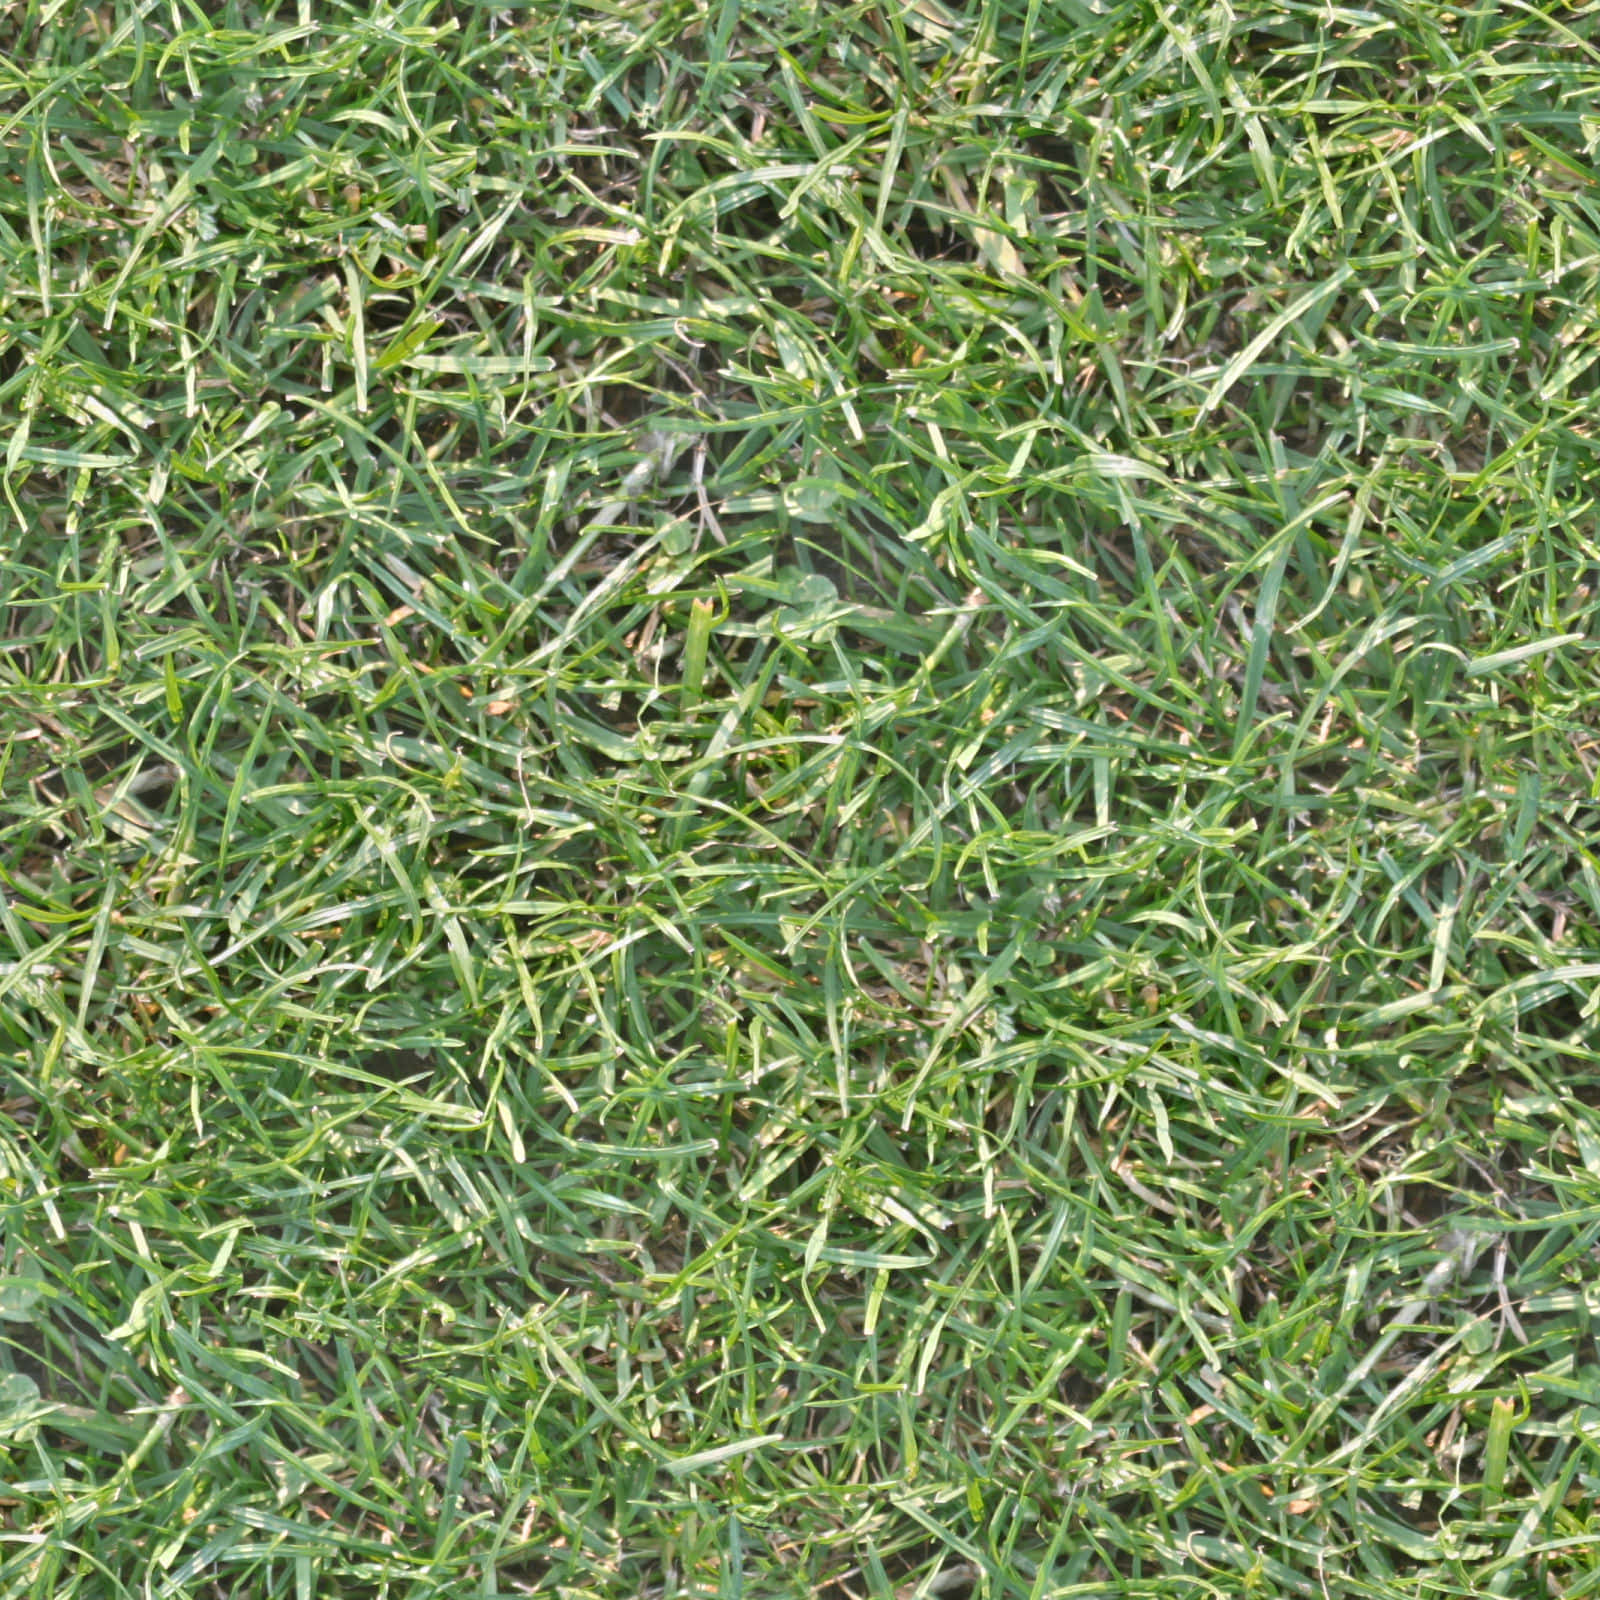 Close Up of a Soft, Lush Grass Texture